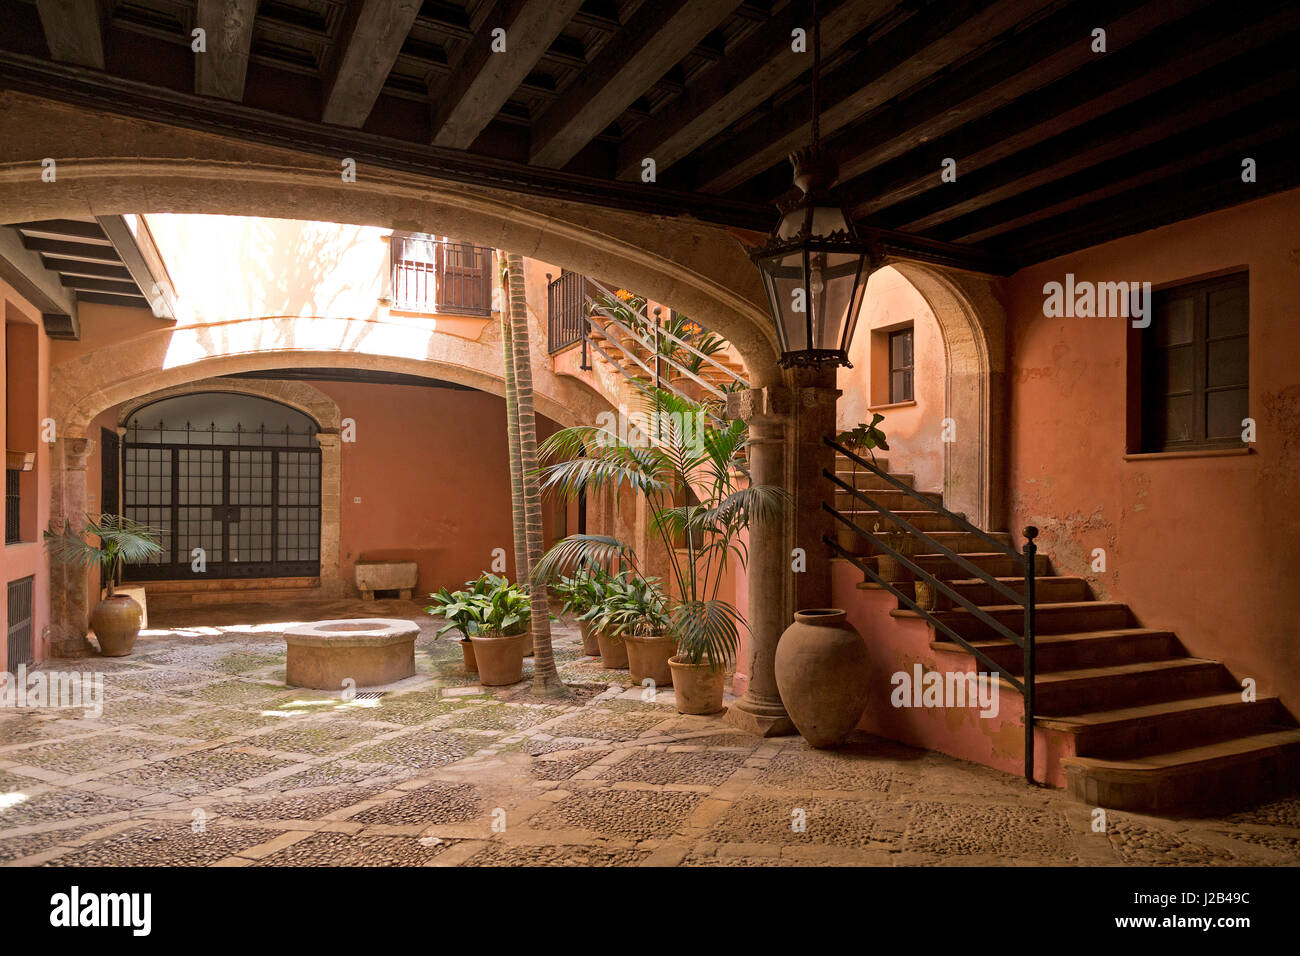 courtyard in Palma de Mallorca, Spain Stock Photo